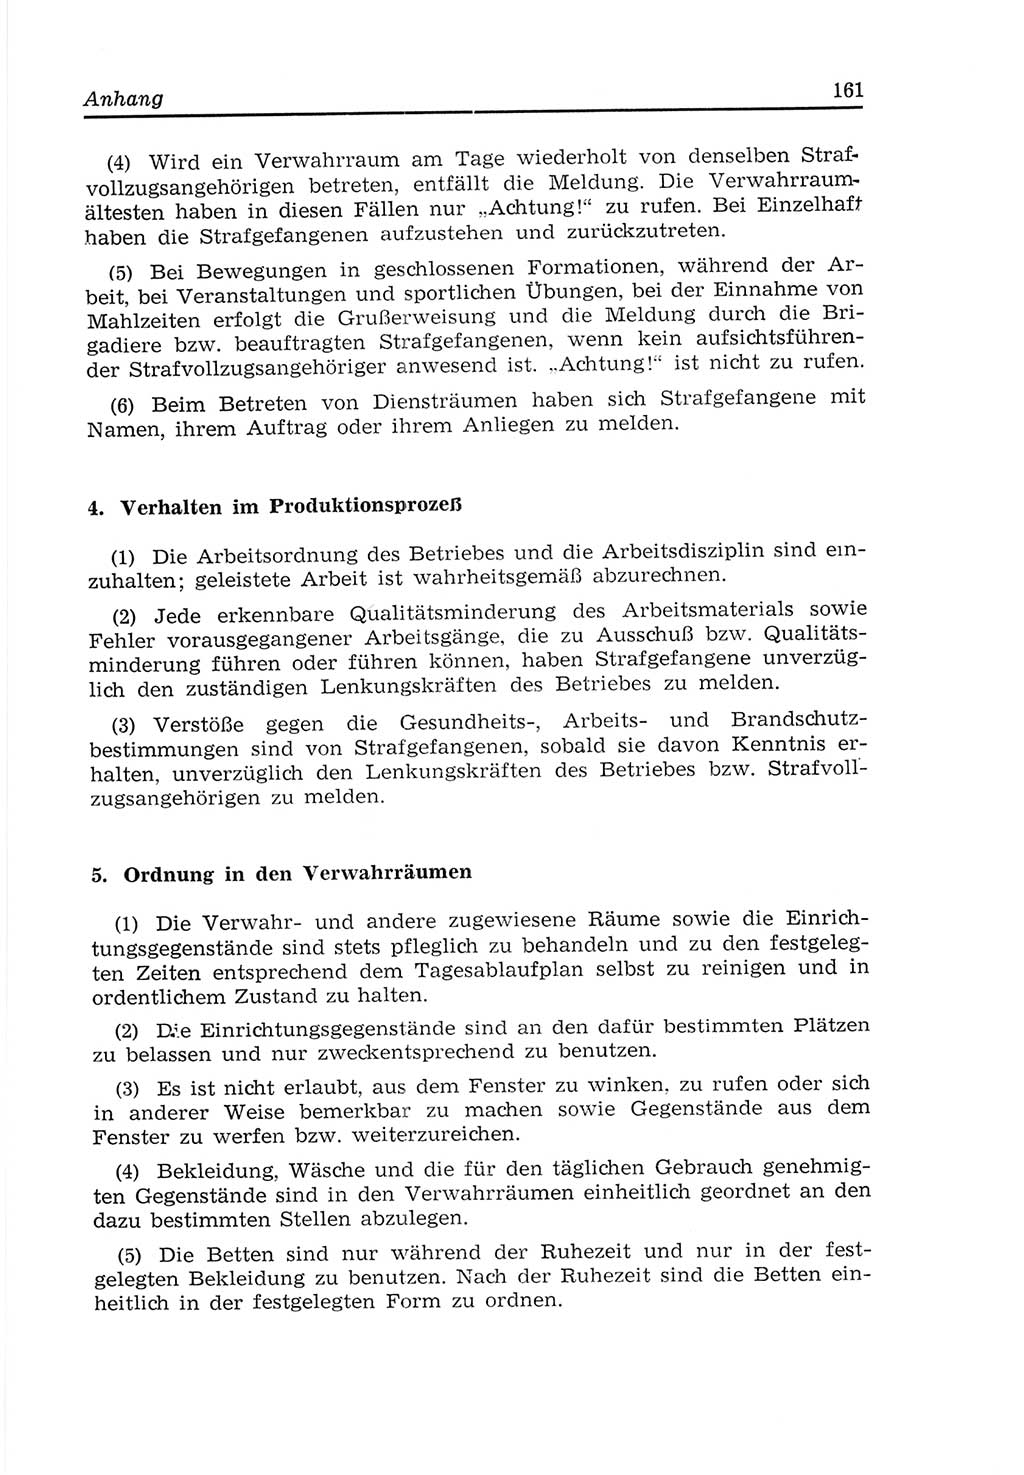 Strafvollzugs- und Wiedereingliederungsgesetz (SVWG) der Deutschen Demokratischen Republik (DDR) 1968, Seite 161 (SVWG DDR 1968, S. 161)